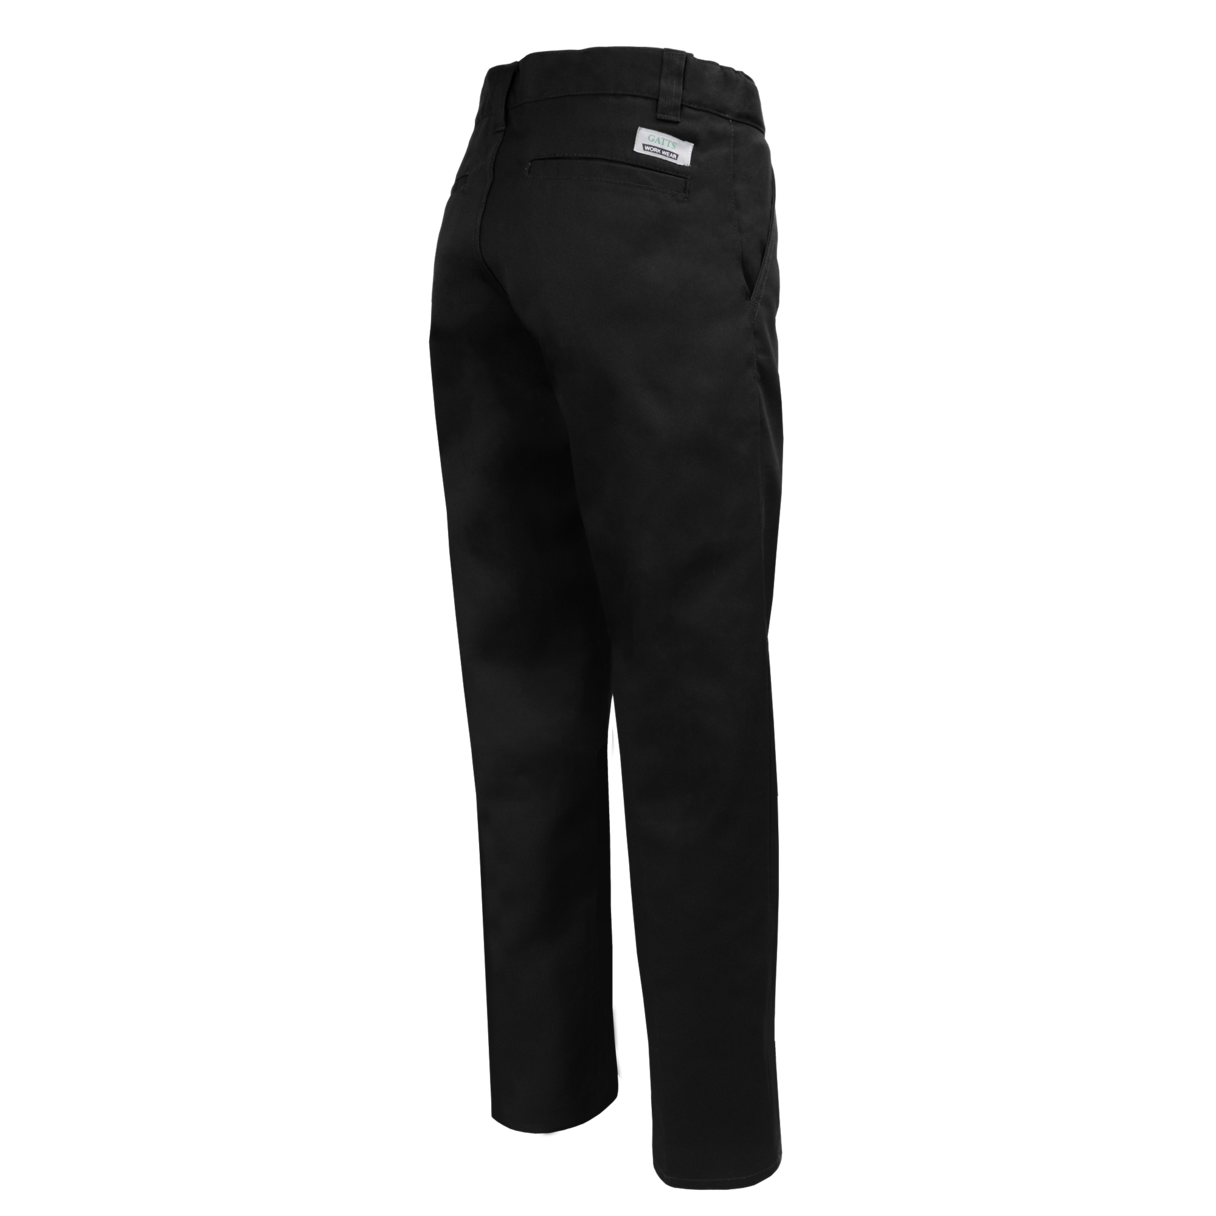 Pantalon de travail taille flexible Gatts #MRB-777-N dos noir